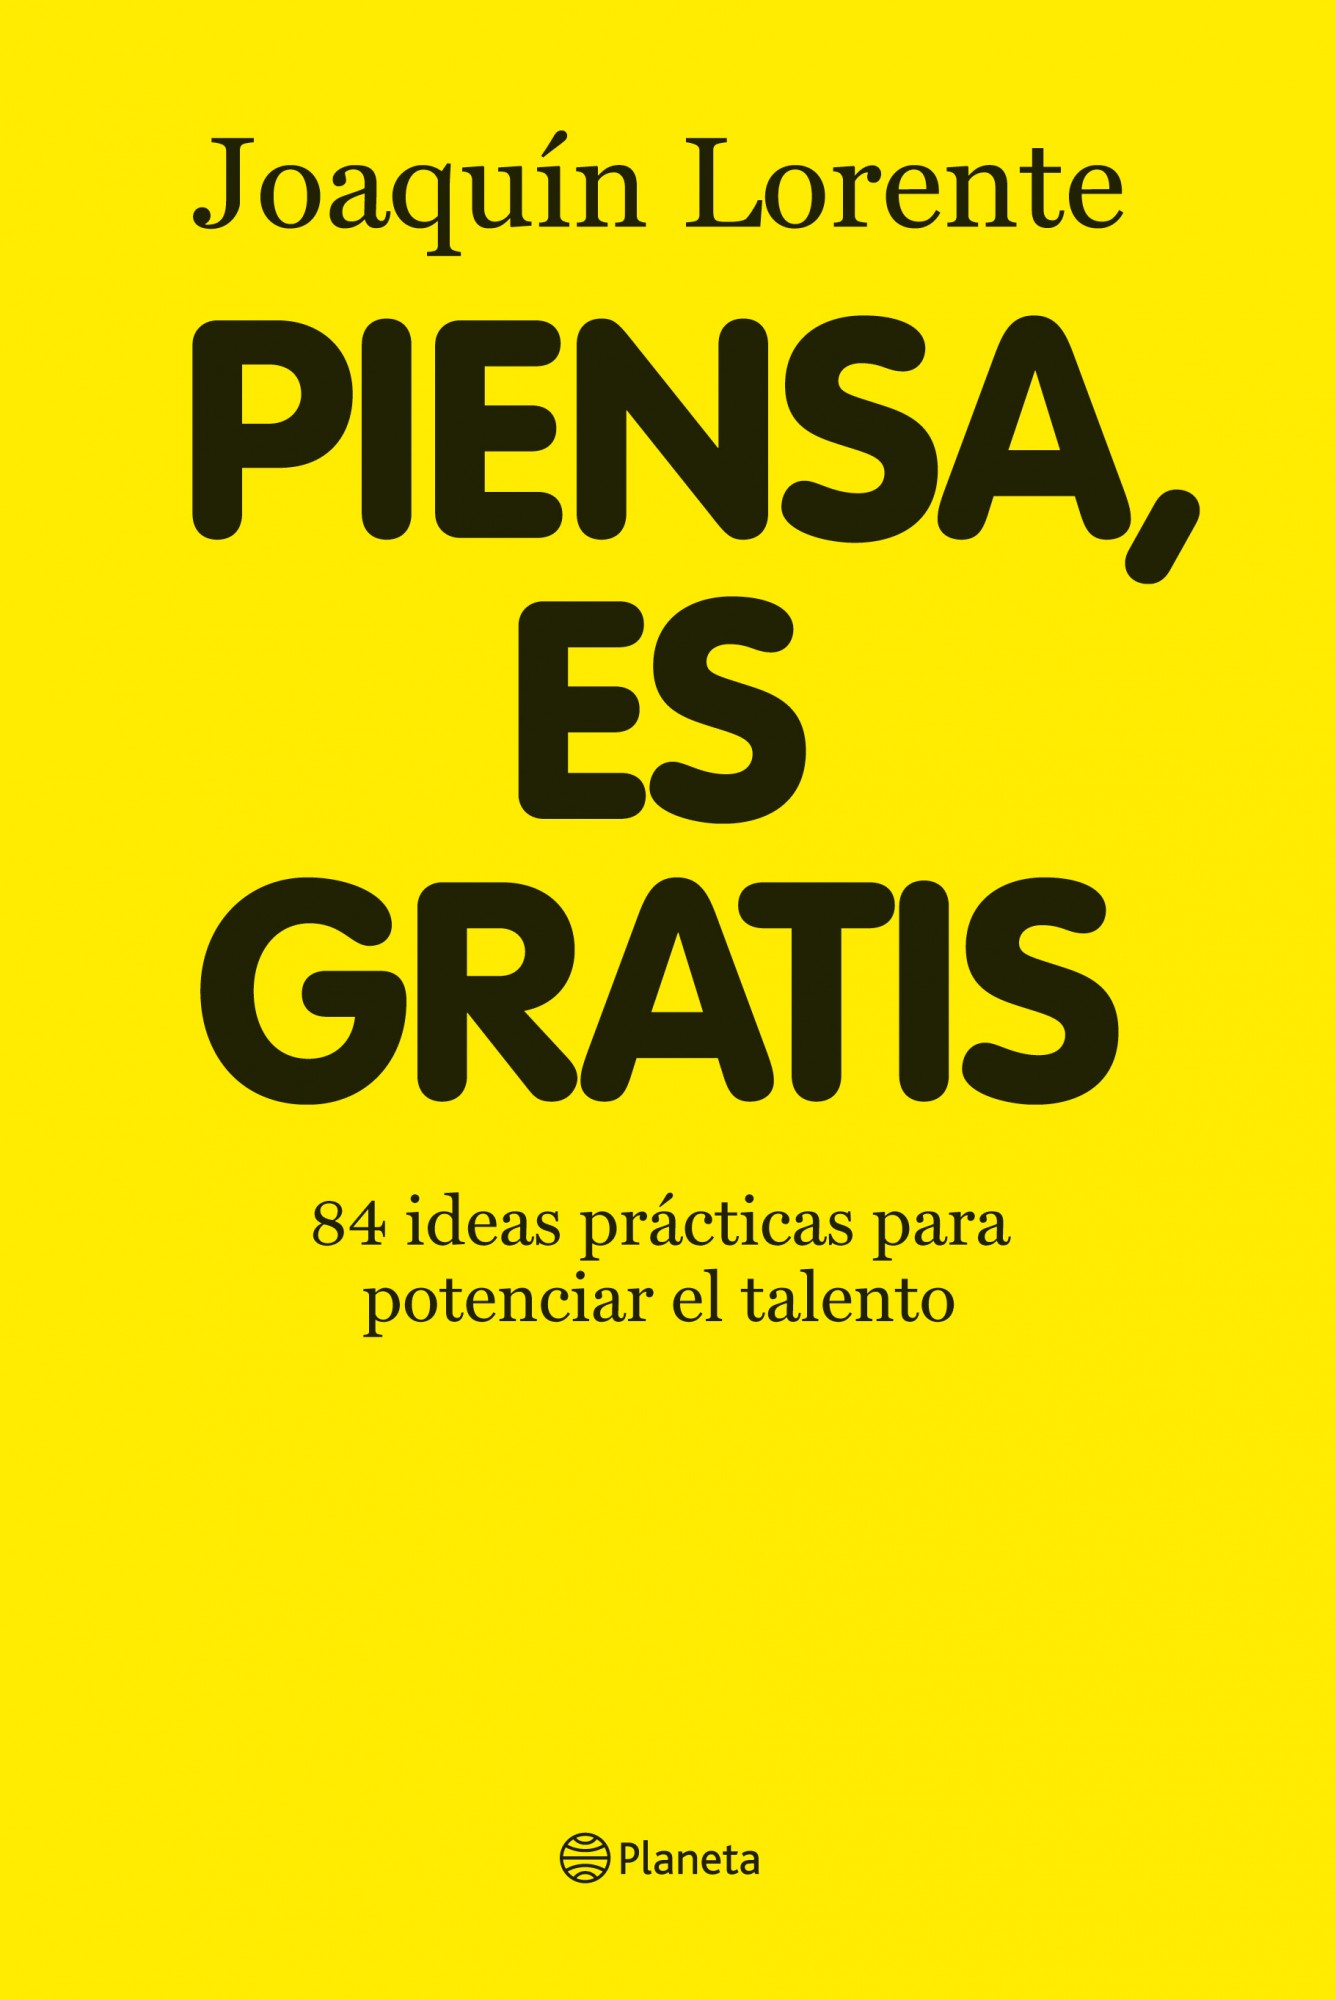 Libro de audio Piensa, es gratis: 84 ideas brillantes para potenciar el talento – Joaquín Lorente